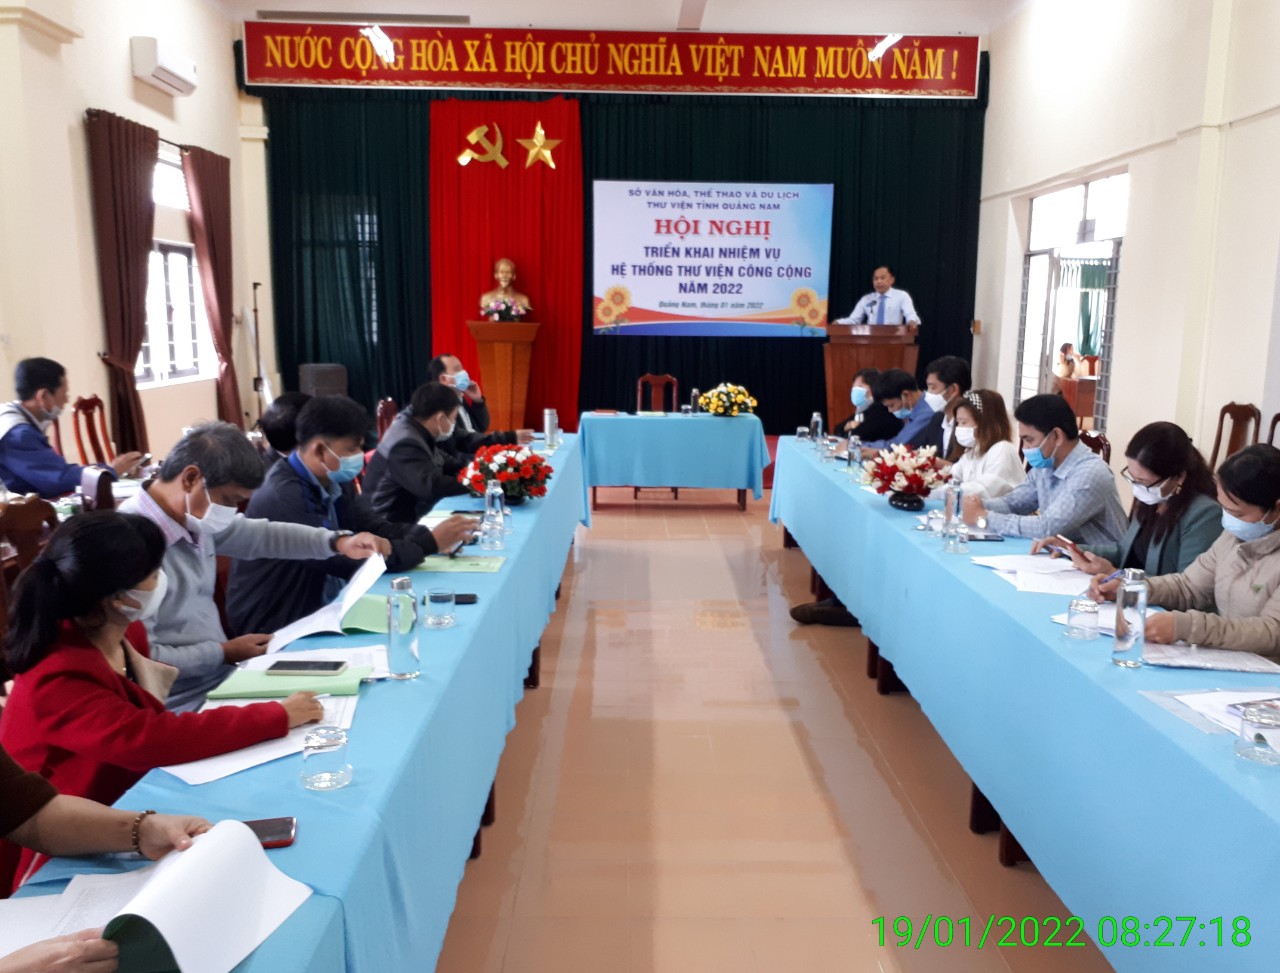 Thư viện tỉnh Quảng Nam tổ chức Hội nghị triển khai nhiệm vụ hệ thống thư viện công cộng tỉnh Quảng Nam năm 2022. 